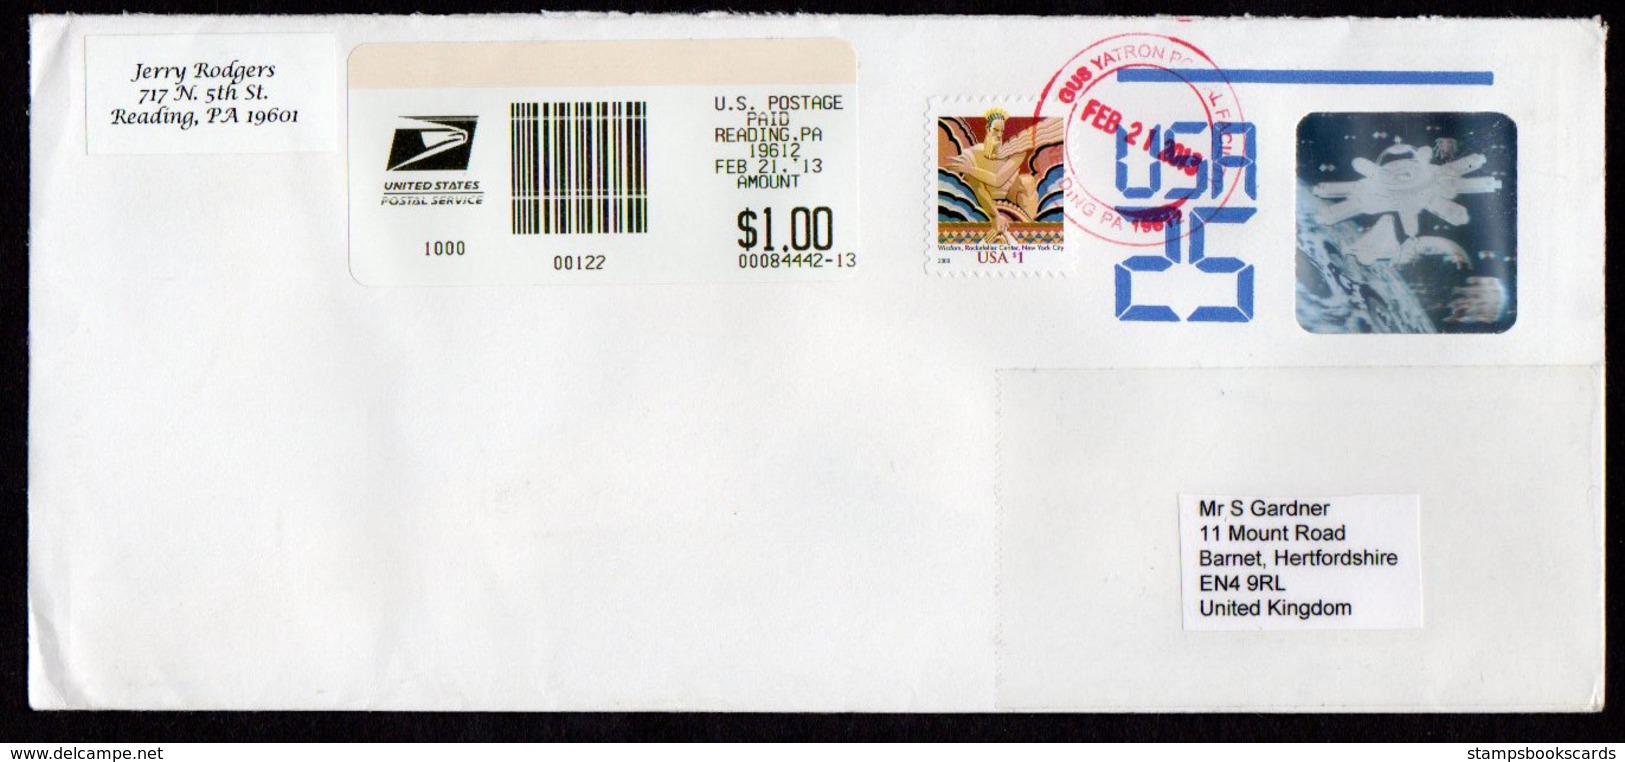 USA Uprated 25c Hologram Stamped Envelope - 2001-10